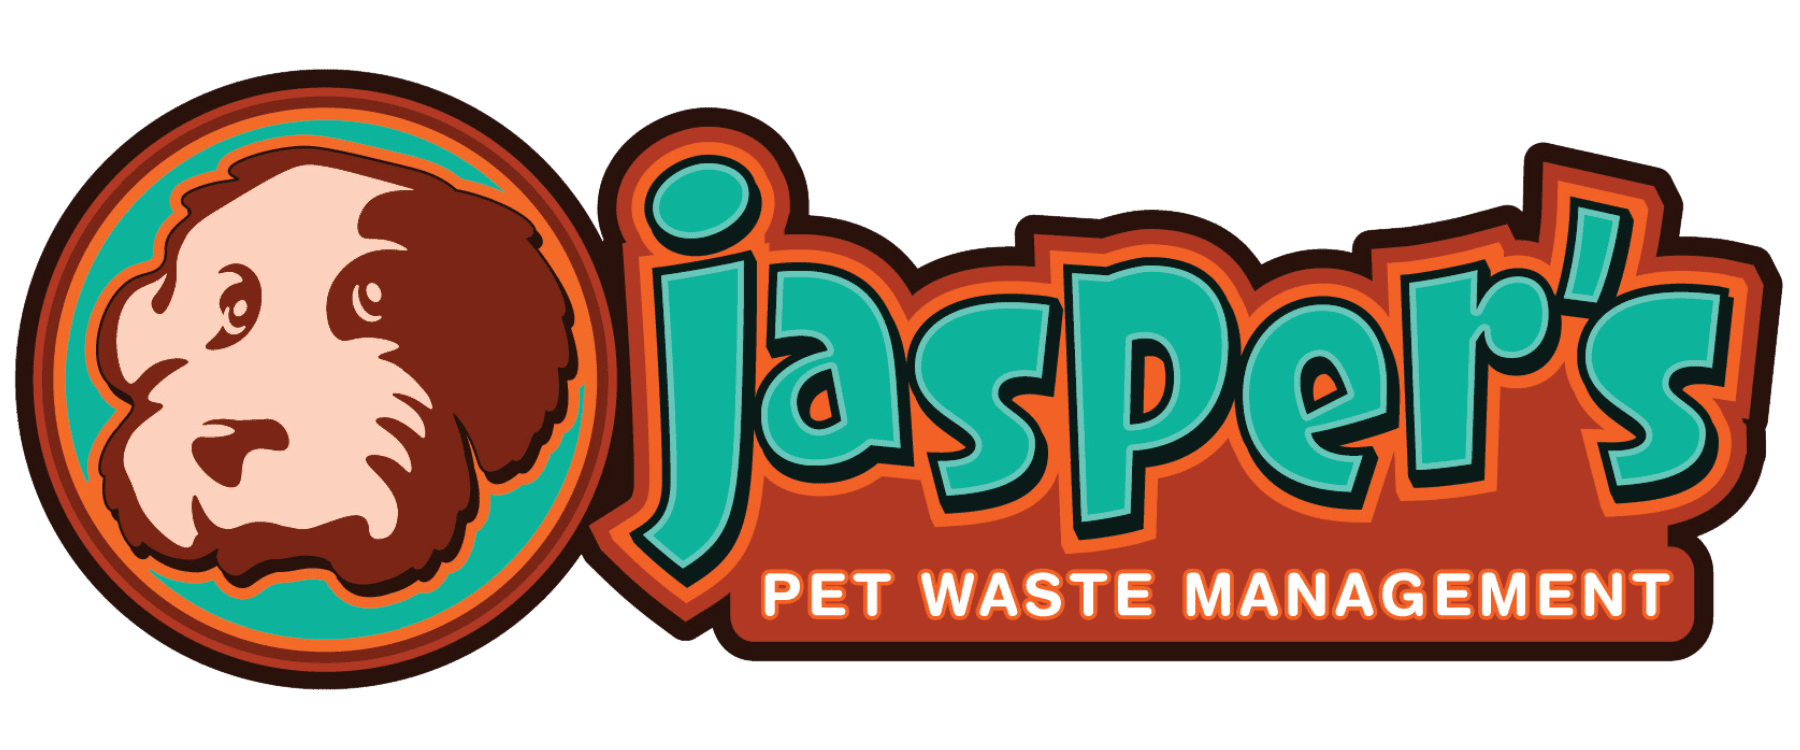 Jasper's Pet Waste Management